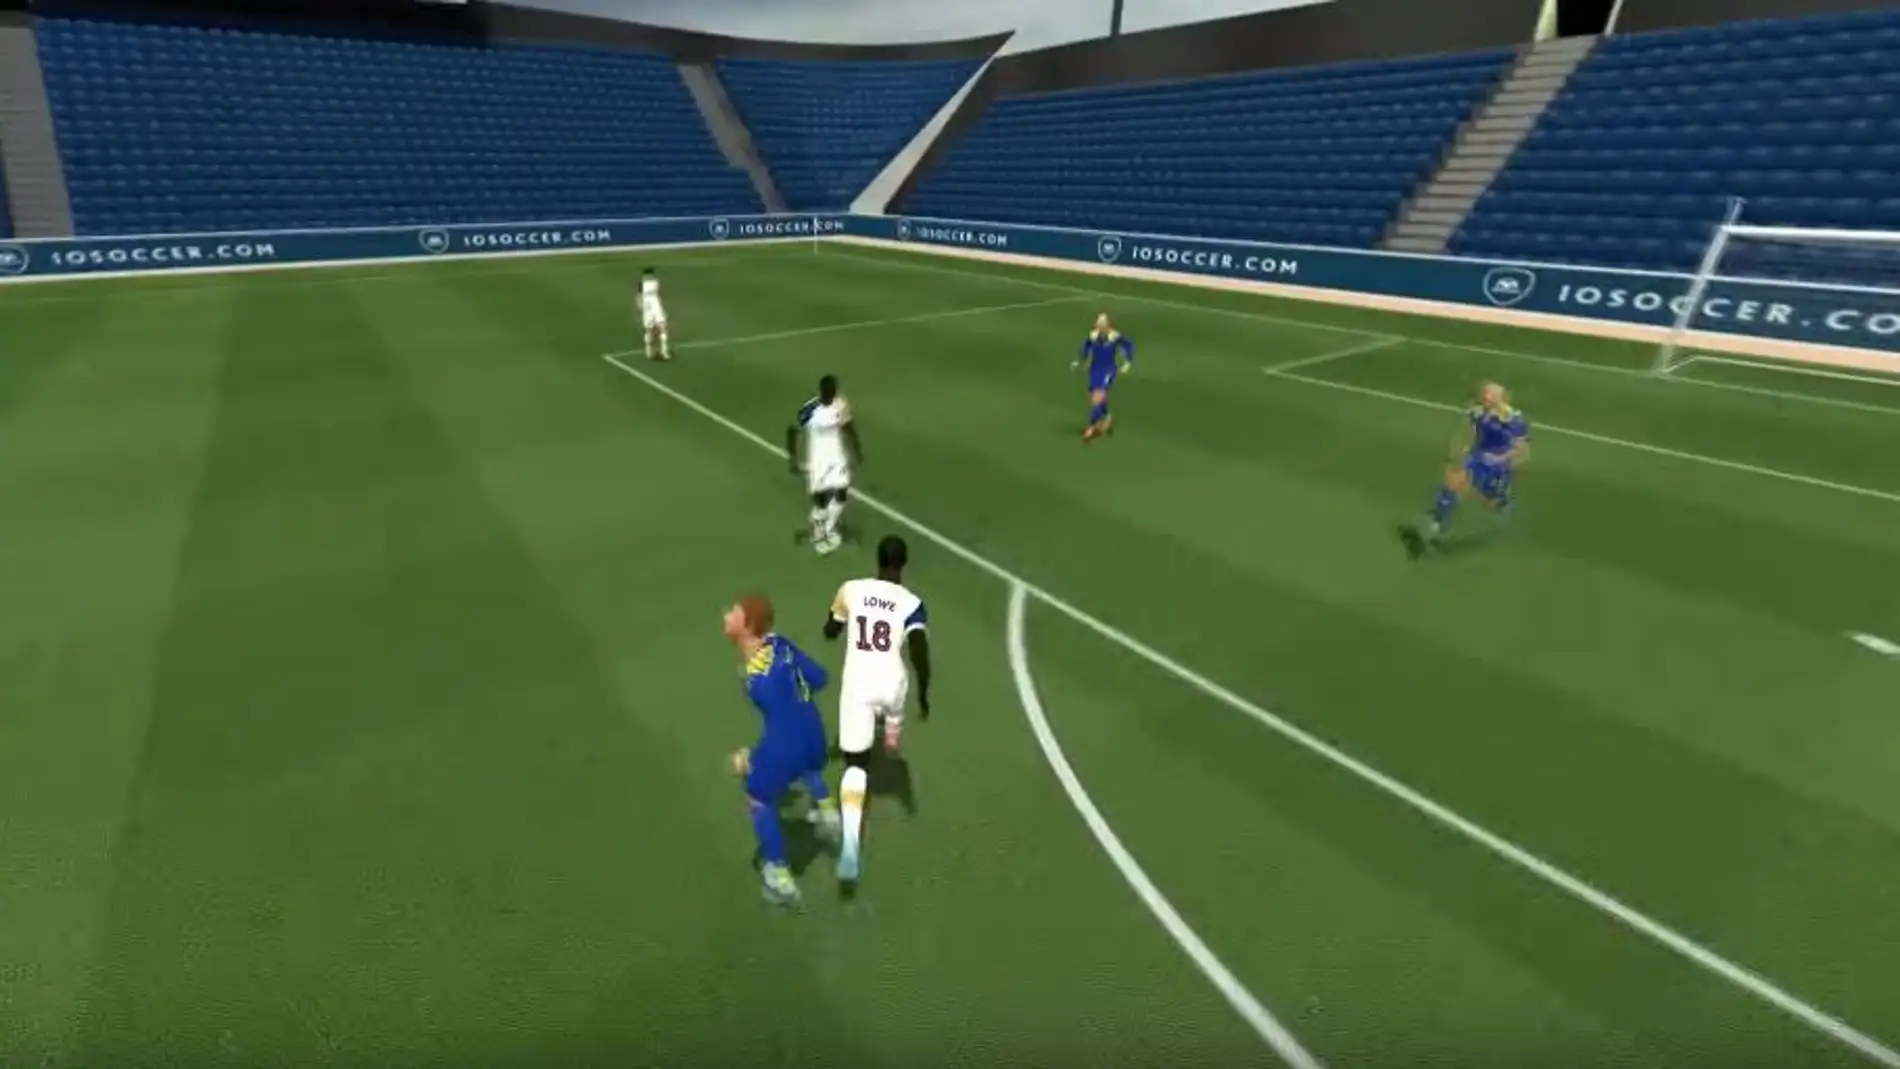 El simulador de fútbol más extraño y gratuito se vuelve a poner de moda 15  años después, juegos de futbol 